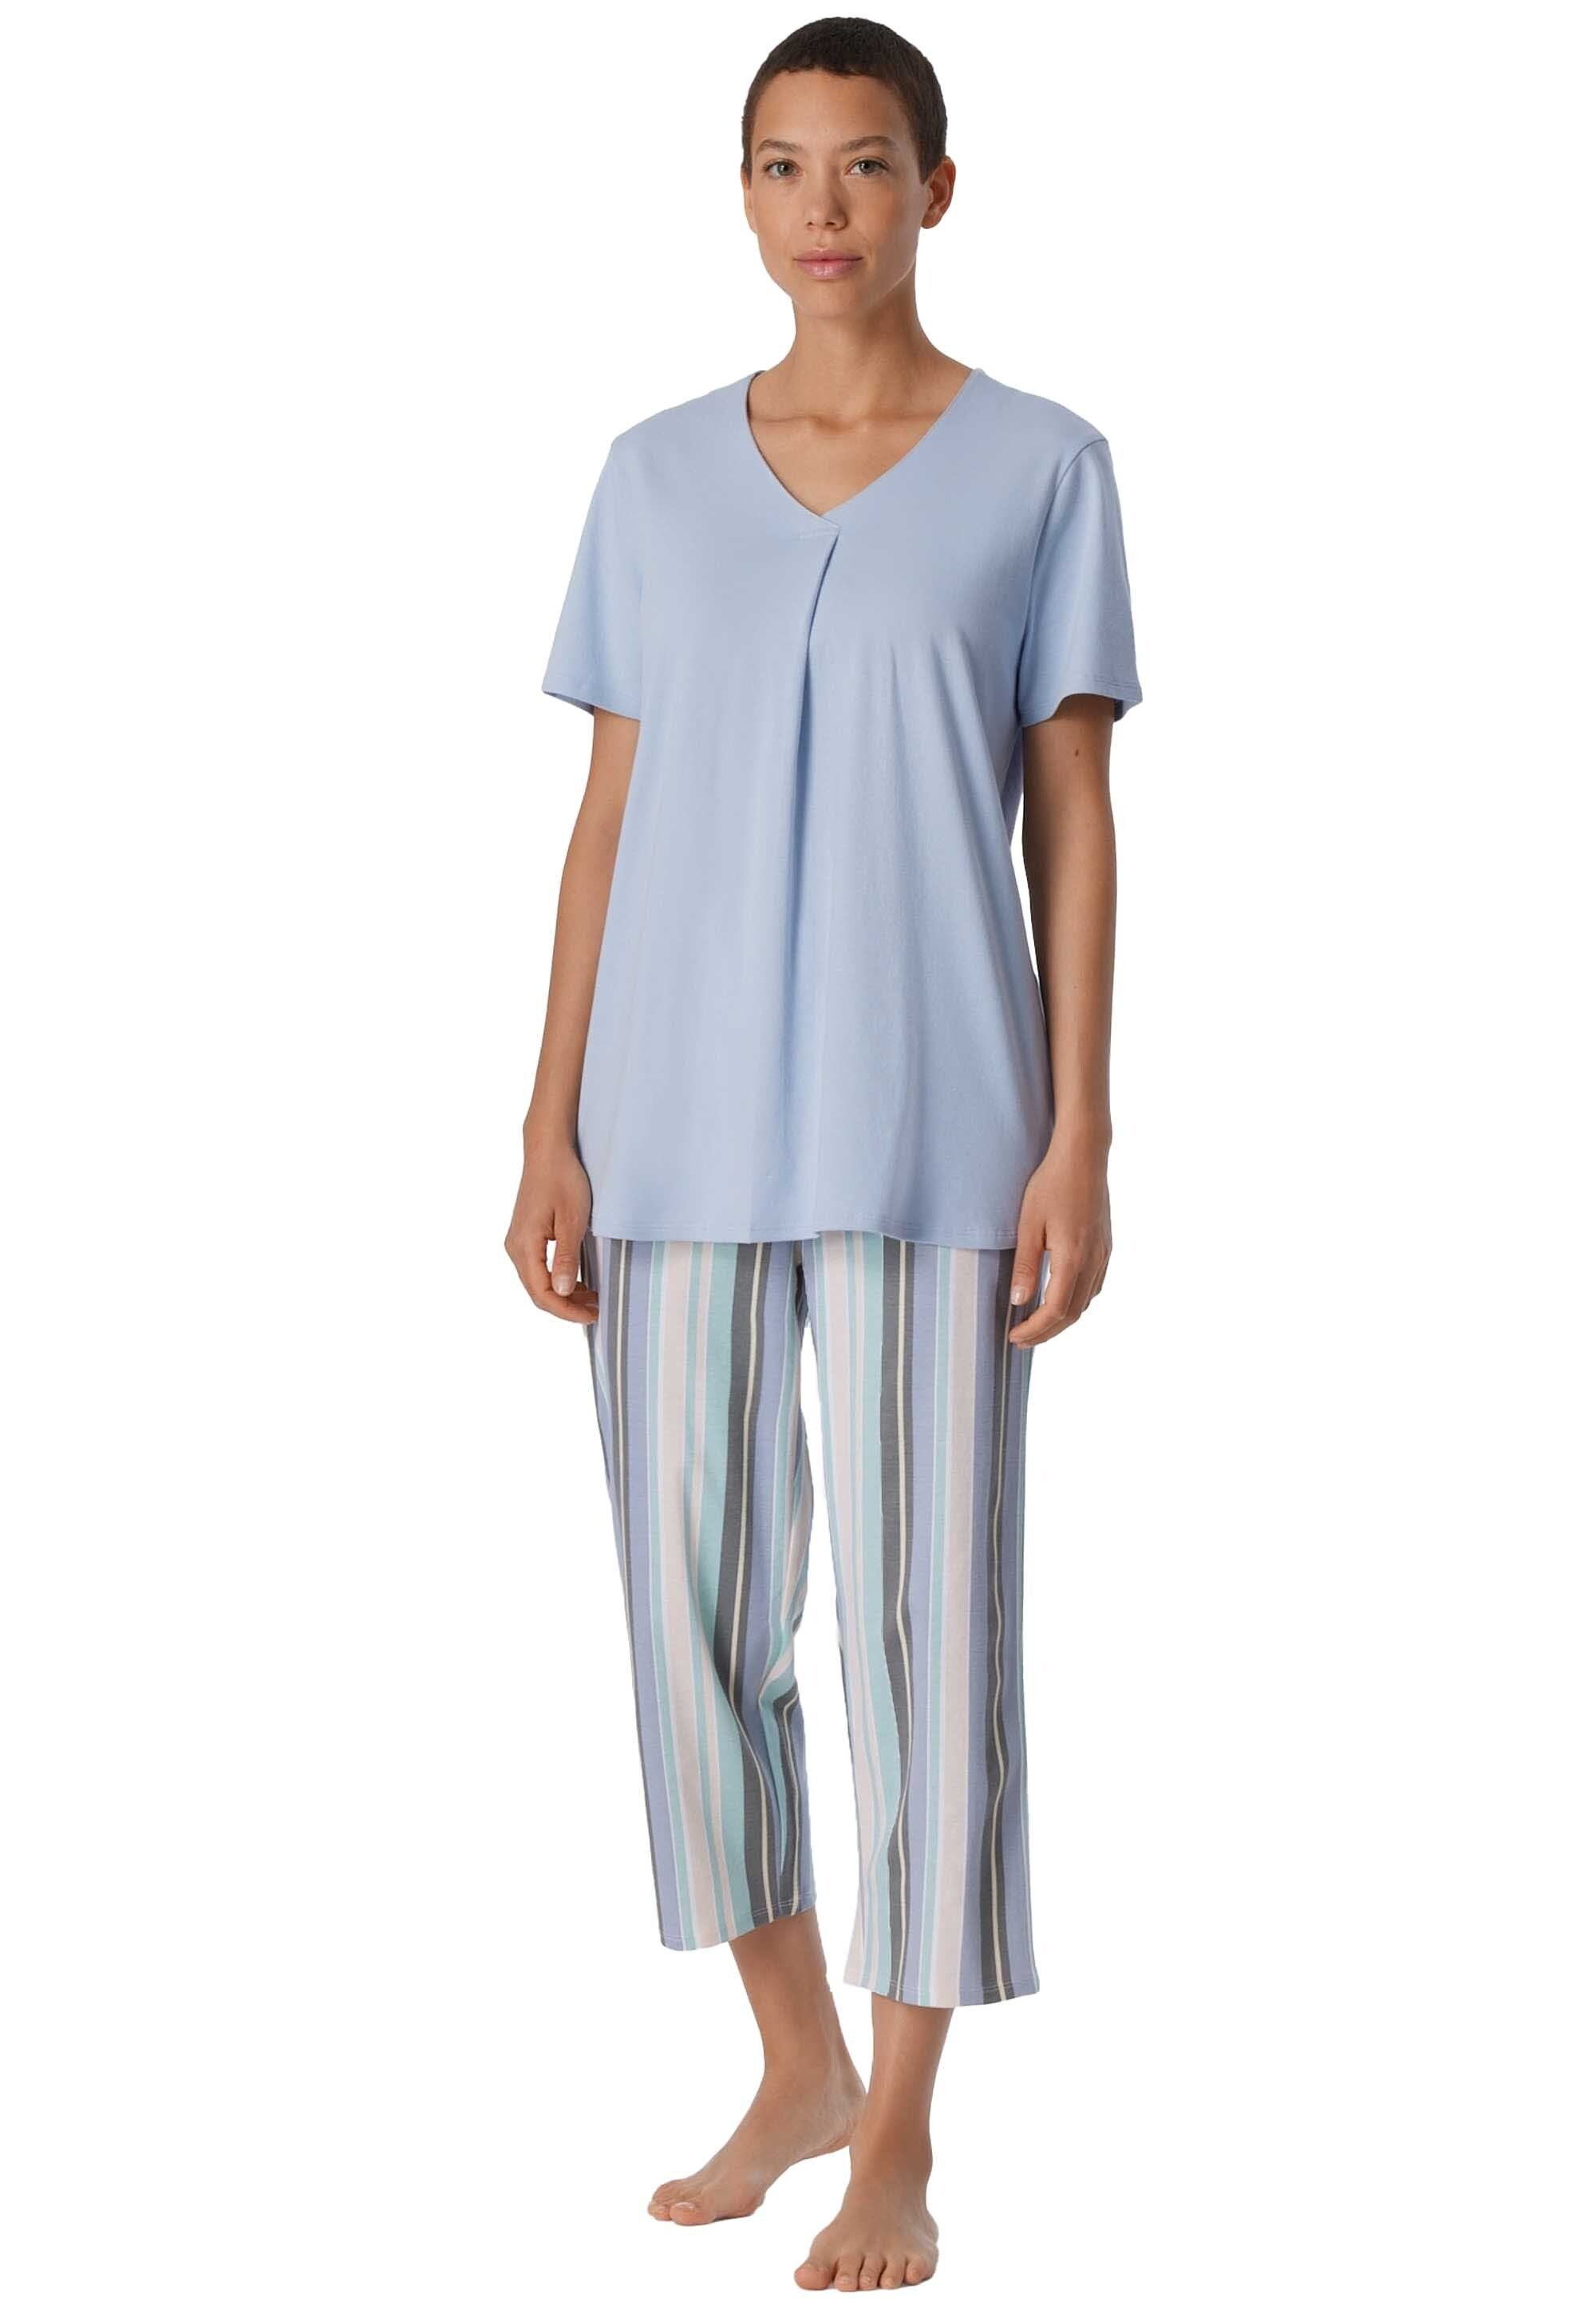 1/2 3/4 Pyjama Hellblau - Damen Nachtwäsche, Schlafanzug Schiesser Arm